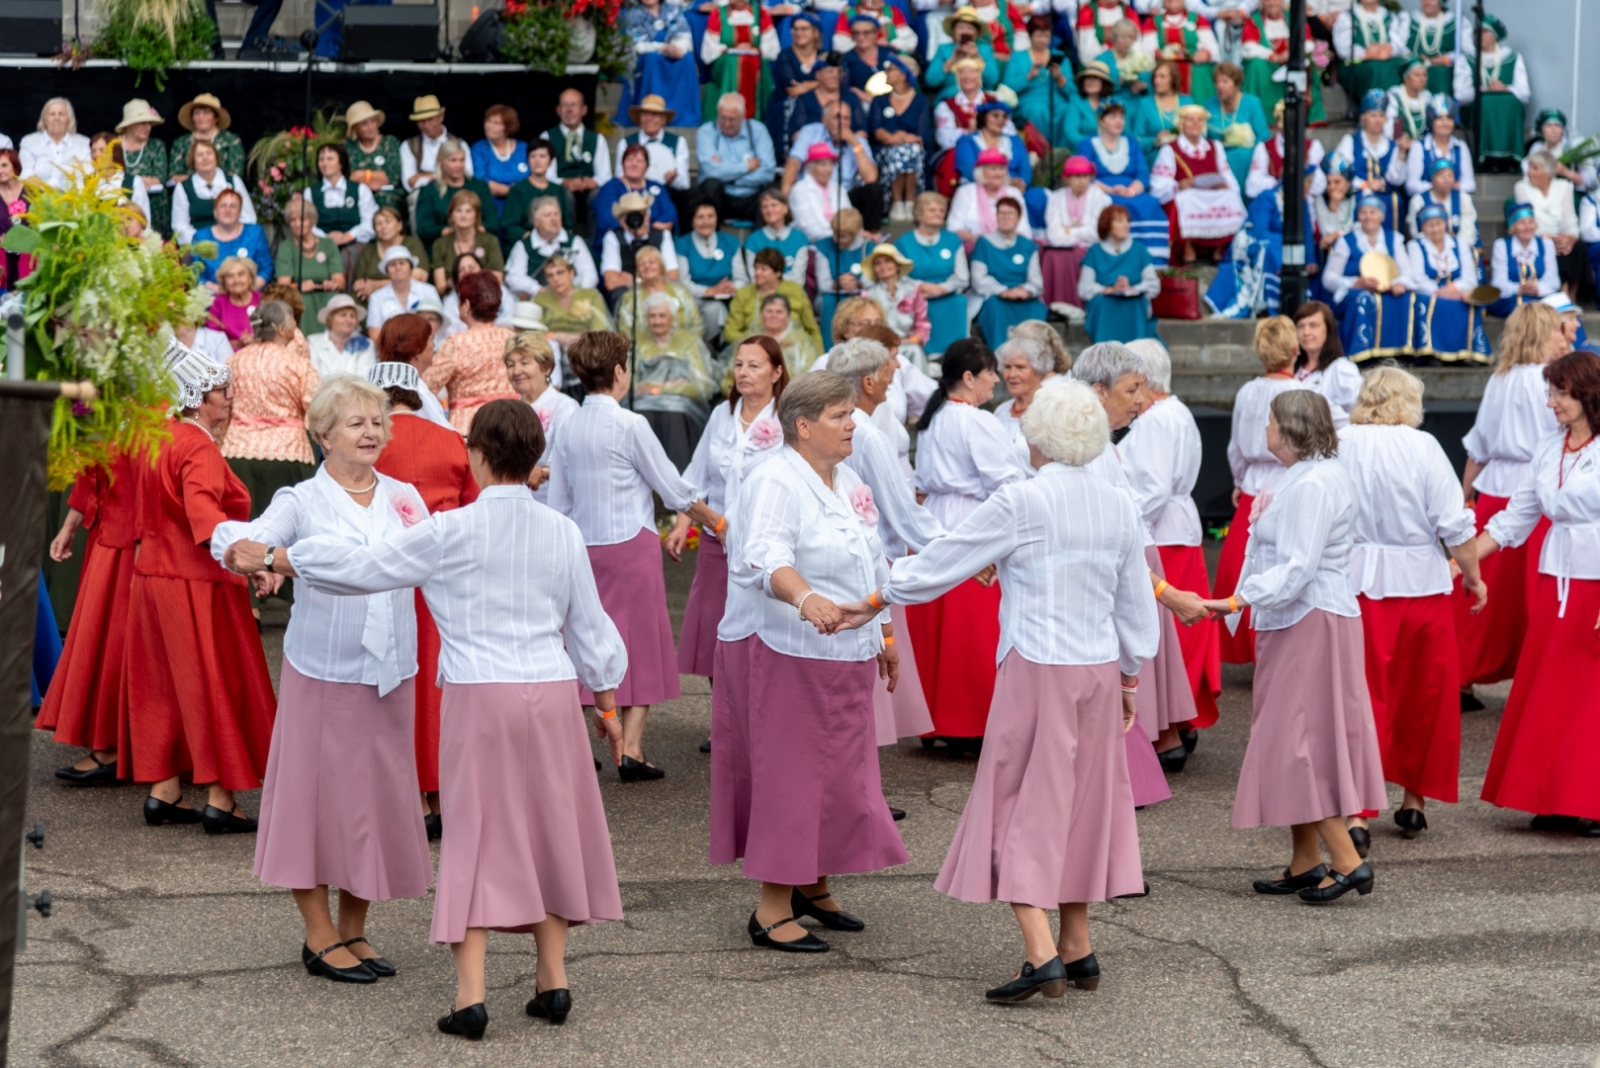 XIX Latgales novada senioru dziesmu un deju svētku festivāls “Ūgu maize”